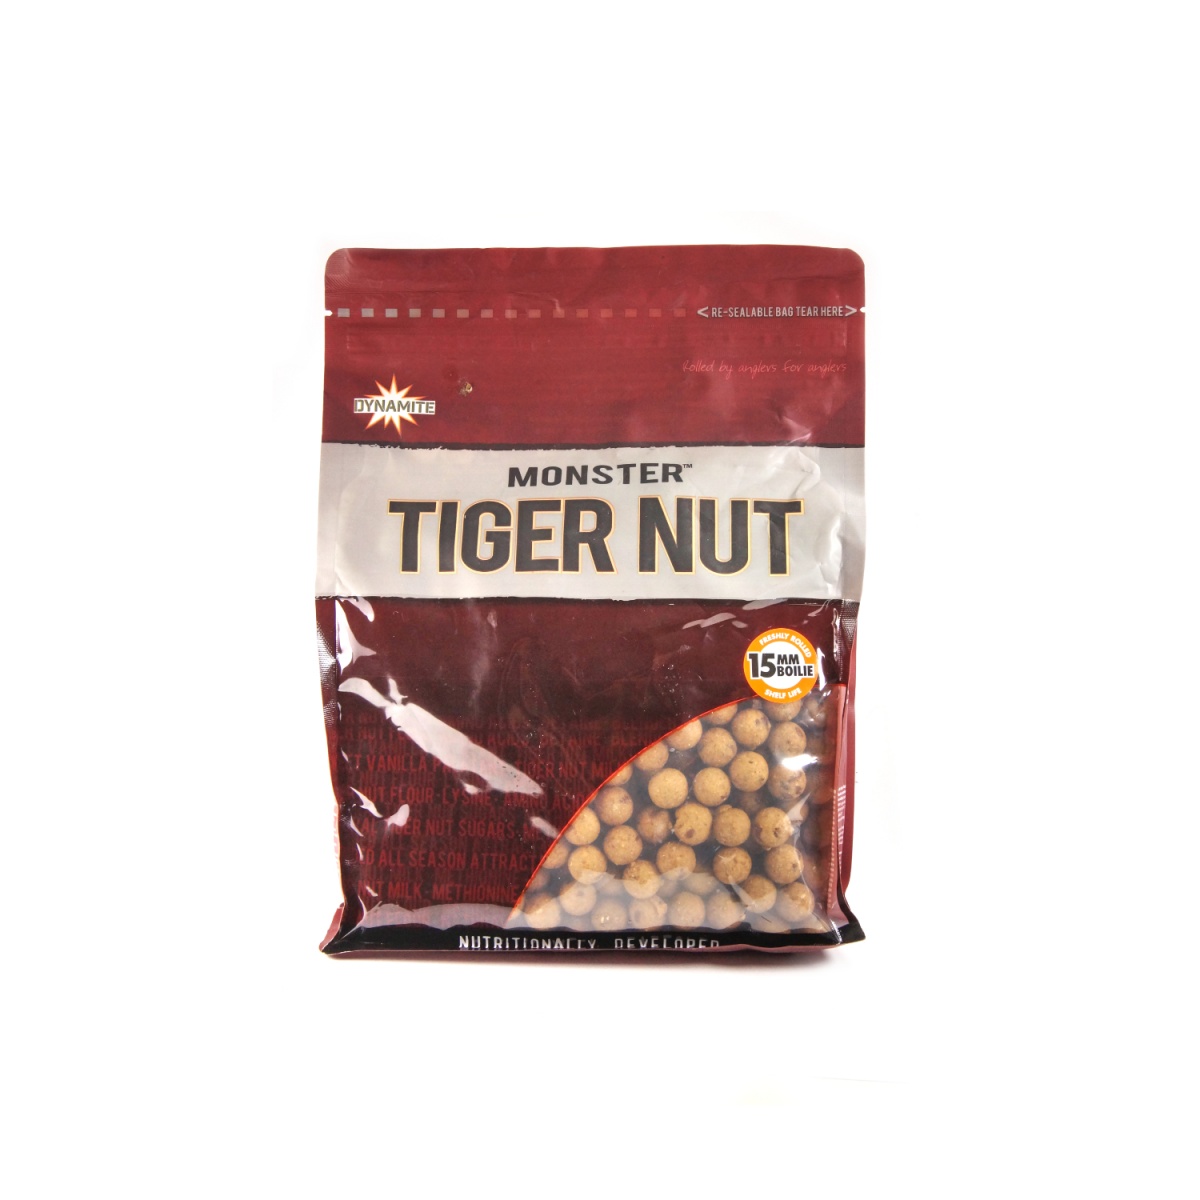 DynamiteBaits Monster Tiger Nut Boilie - Kulki Proteinowe 15 mm / 1kg rozmiar / opakowanie